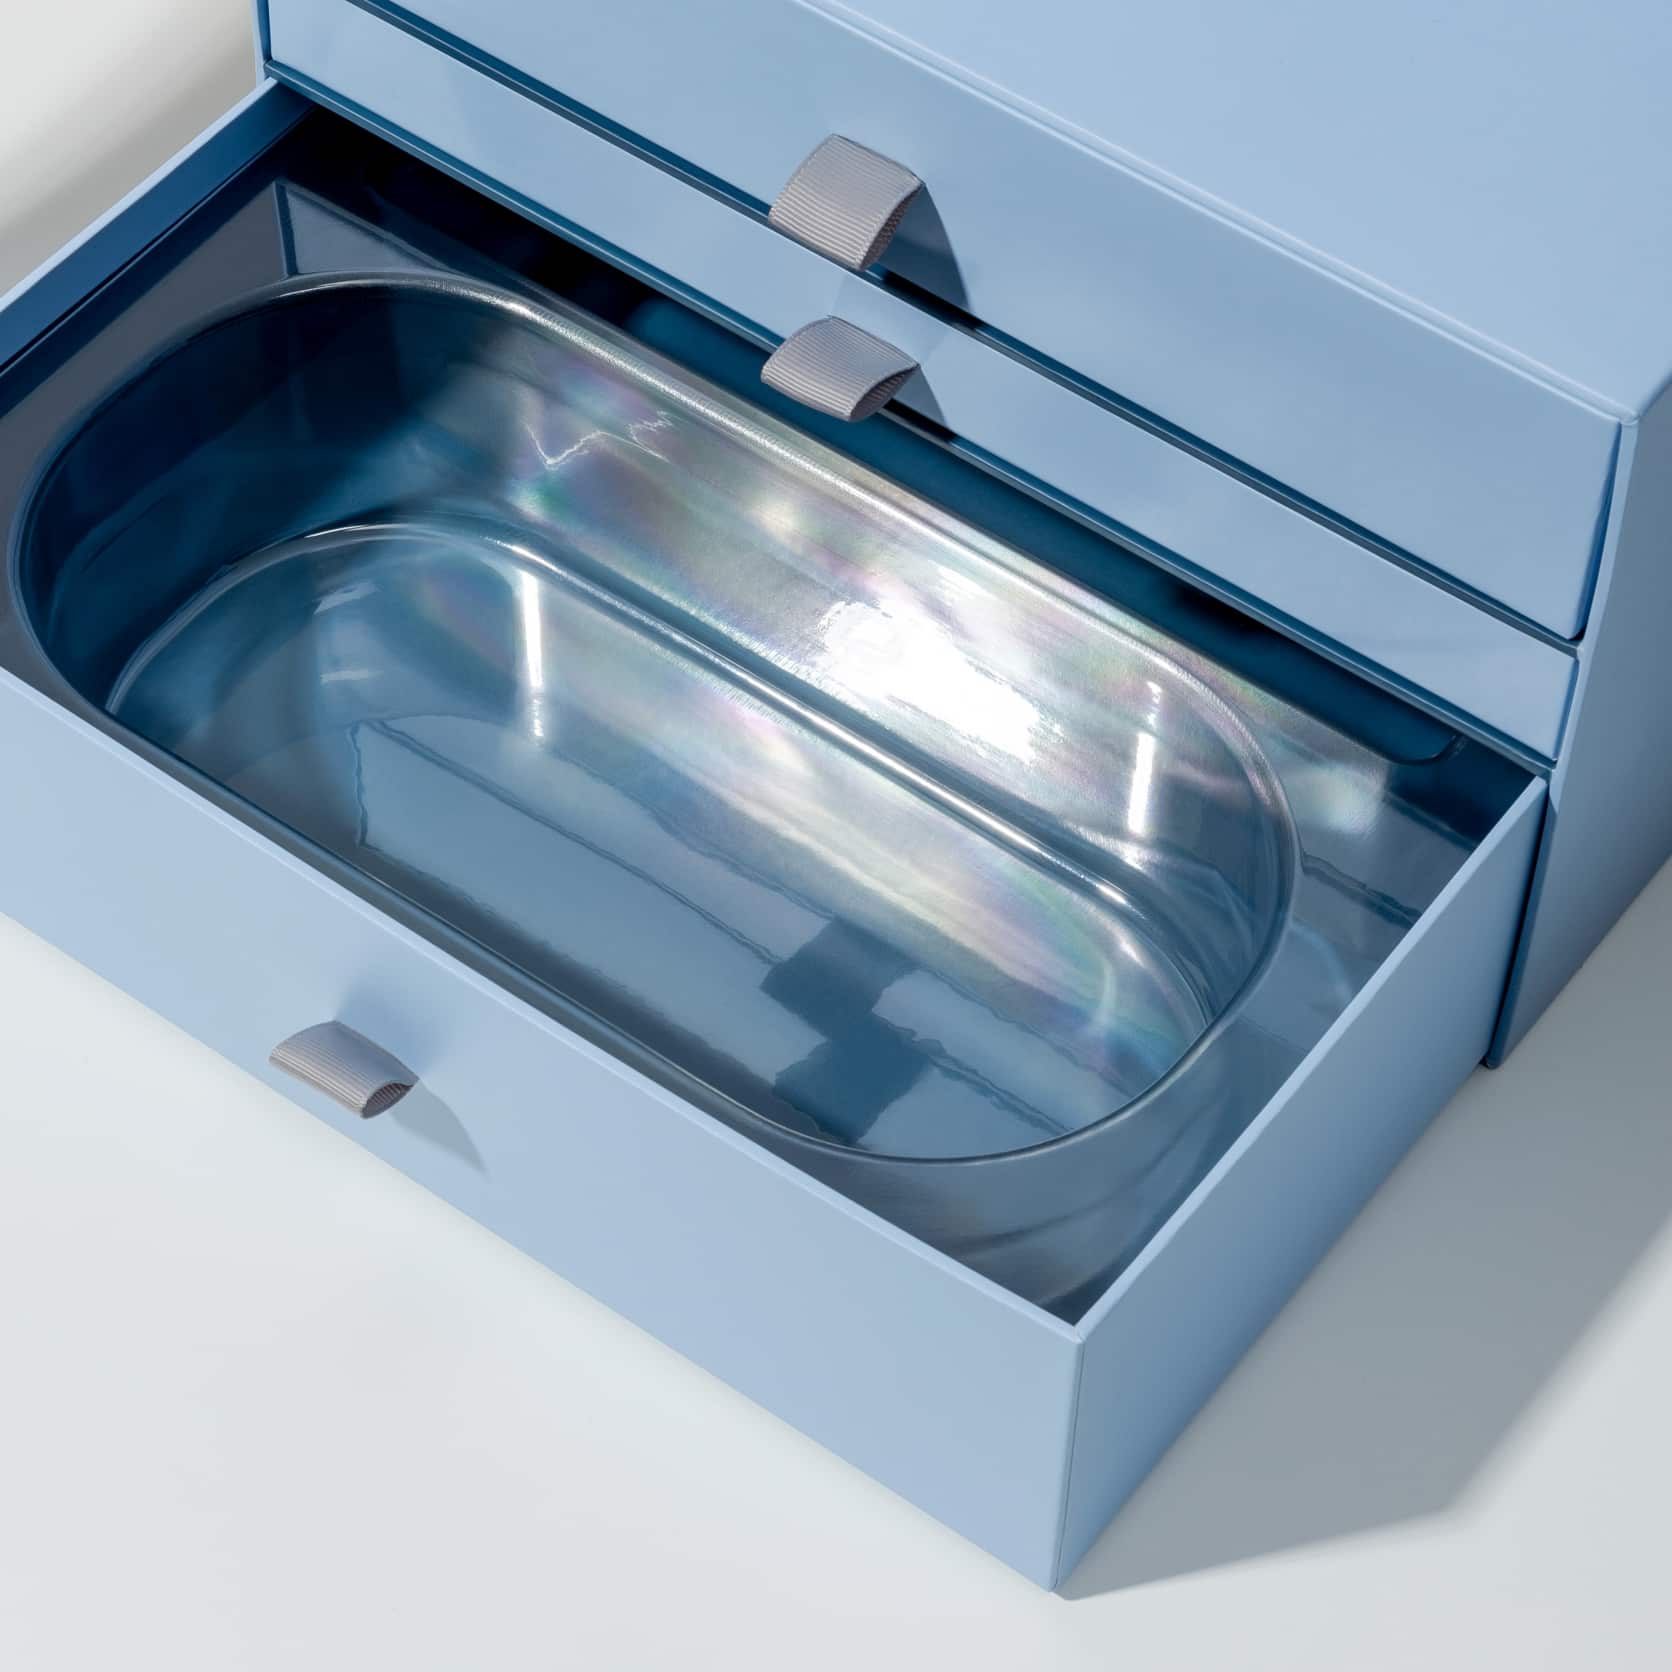 blister or plastic insert inside a rigid drawer box